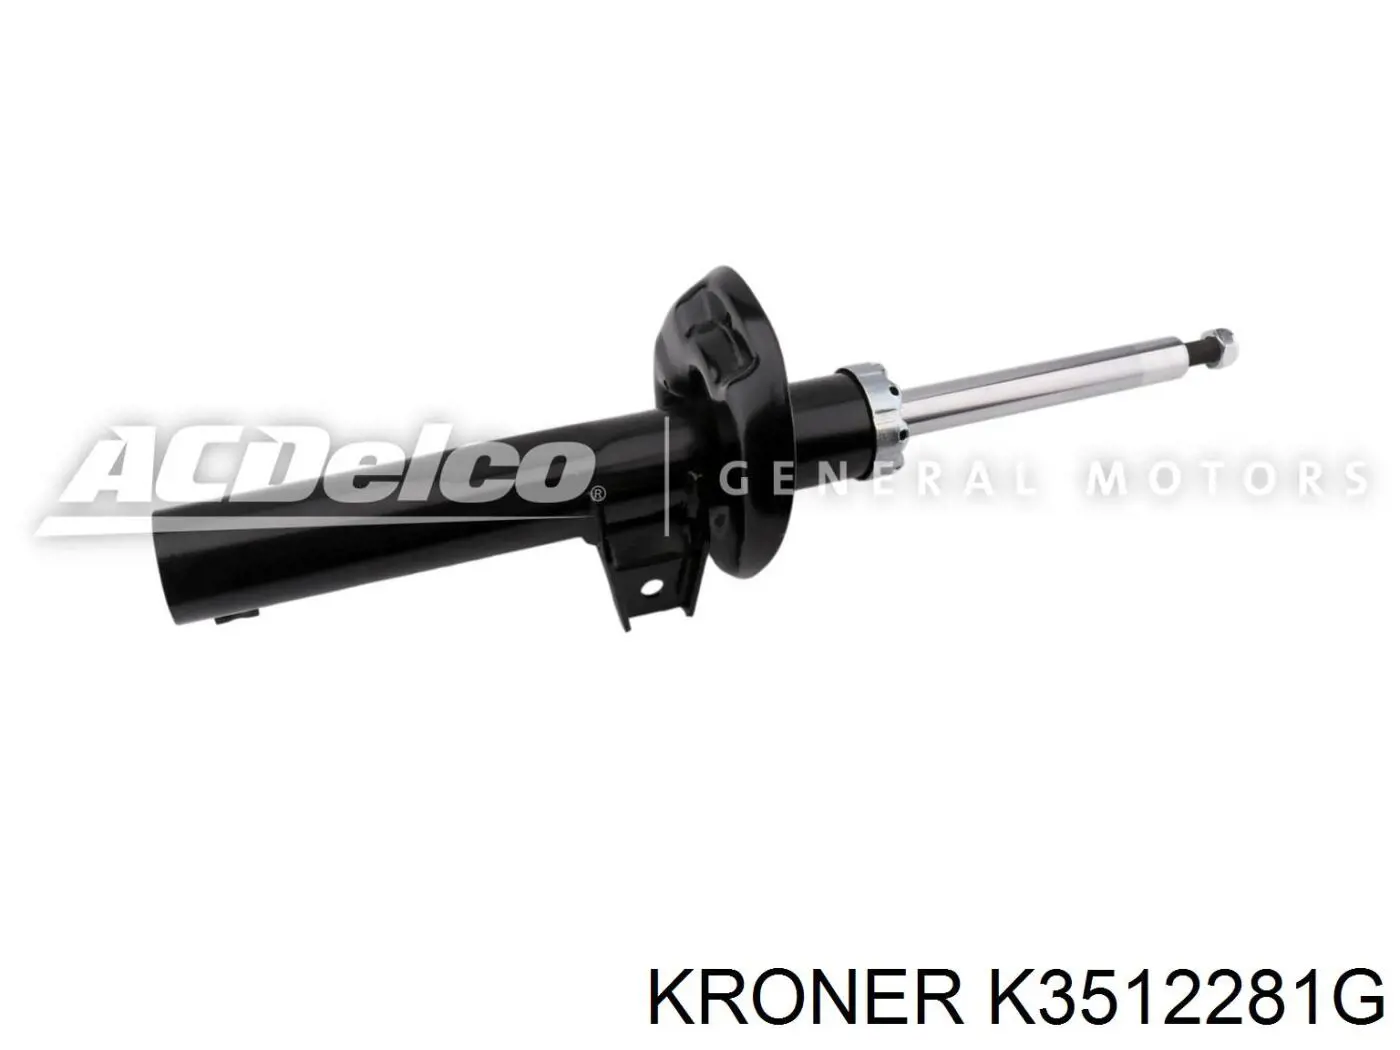 K3512281G Kroner амортизатор передний